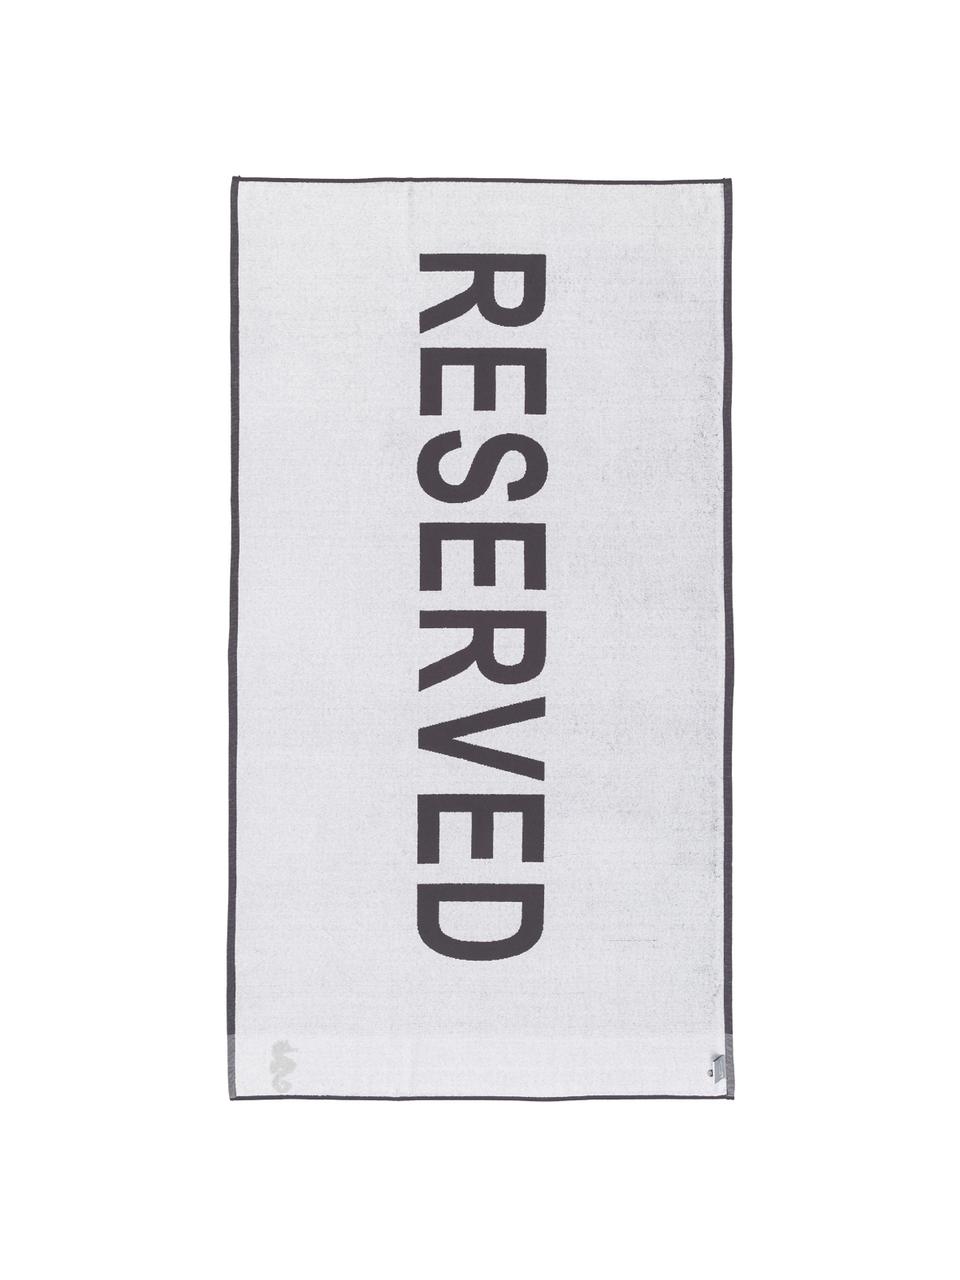 Ręcznik plażowy Reserved, Antracytowy, S 100 x D 180 cm